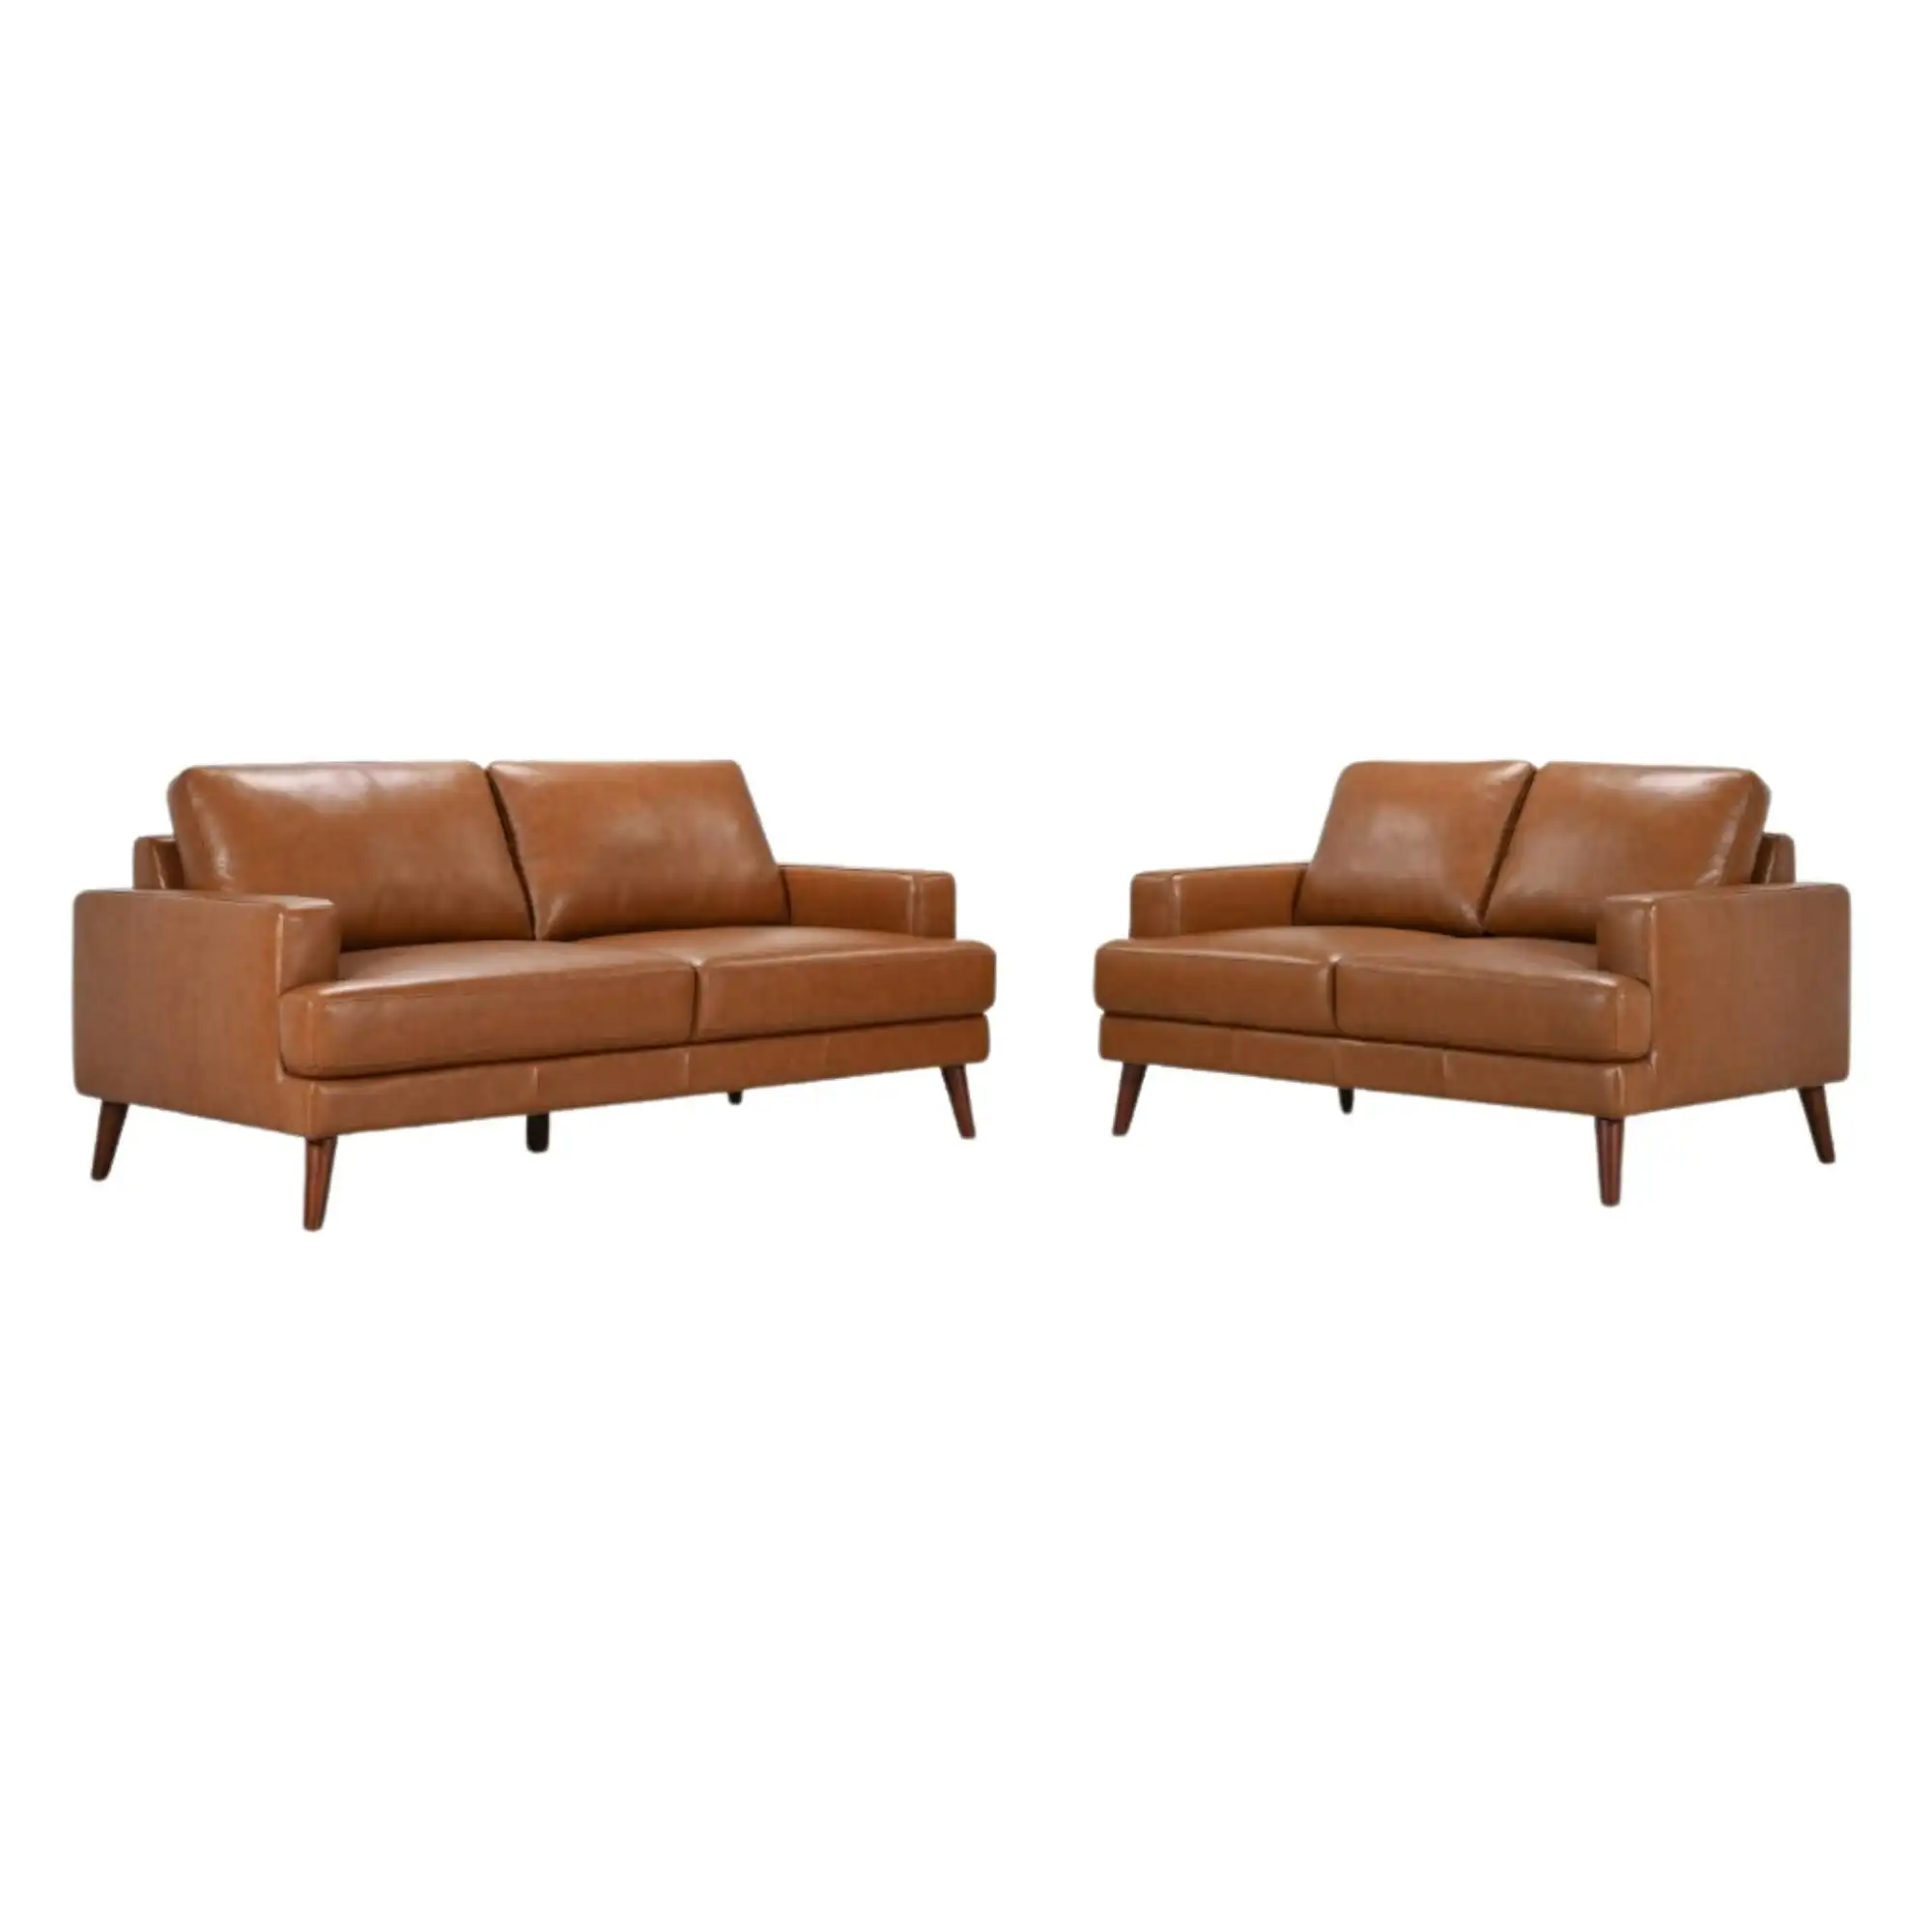 Matilda 2 + 3 Seater Leather Sofa Set